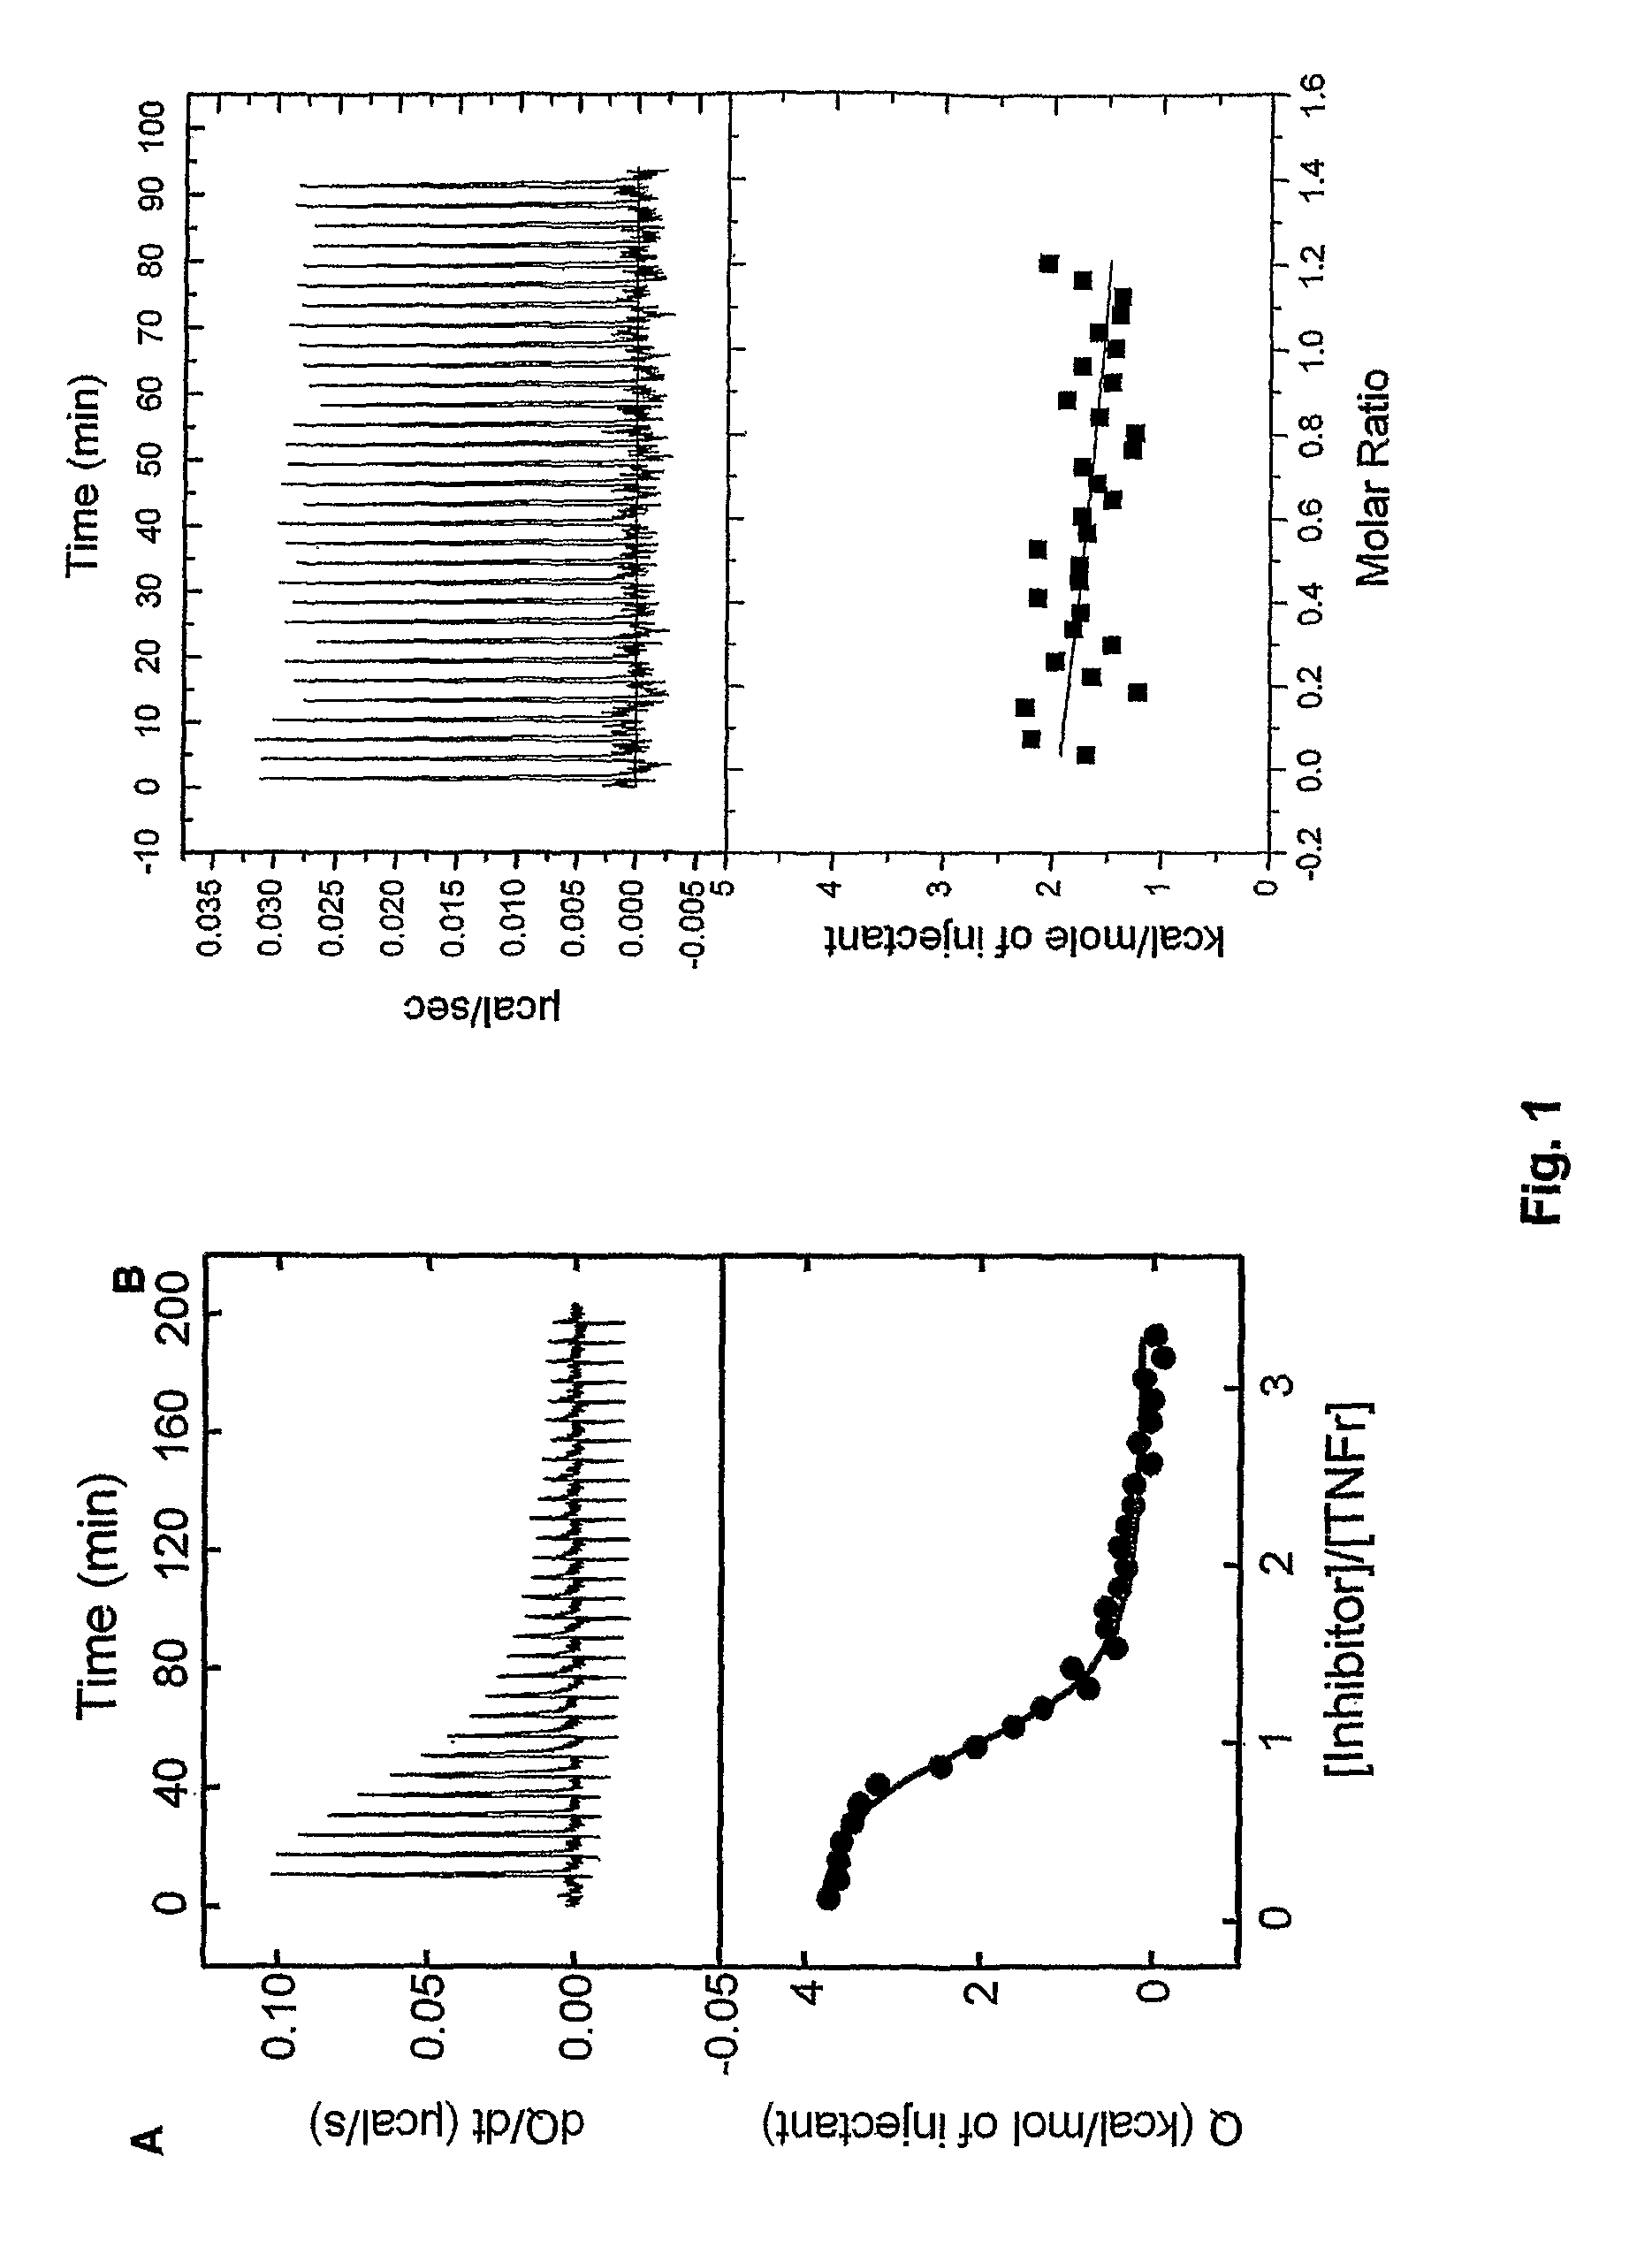 Tumor necrosis factor inhibitors